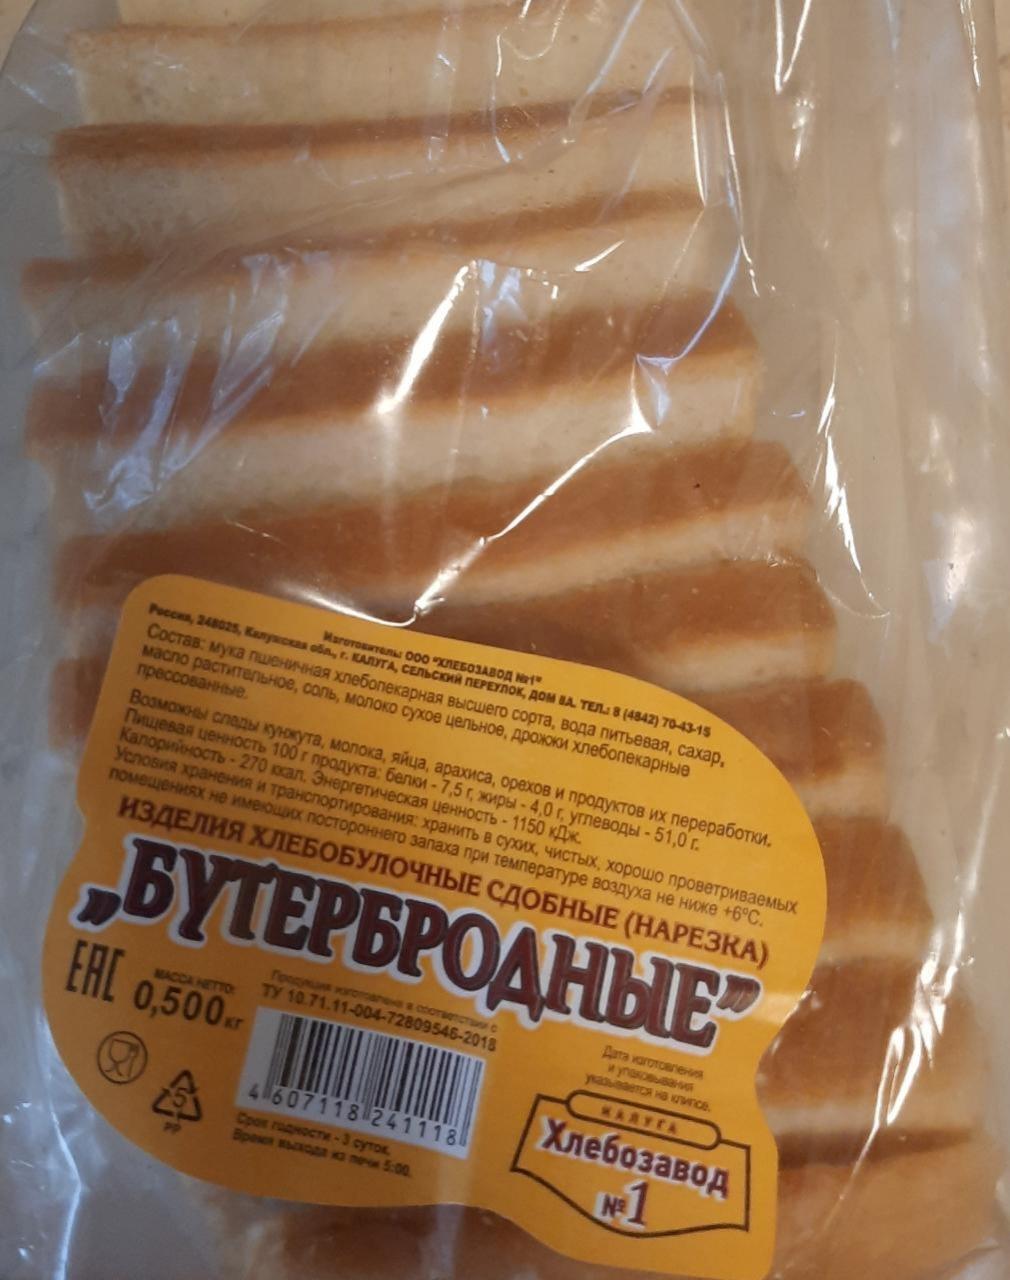 Фото - бутербродный хлеб Хлебозавод №1